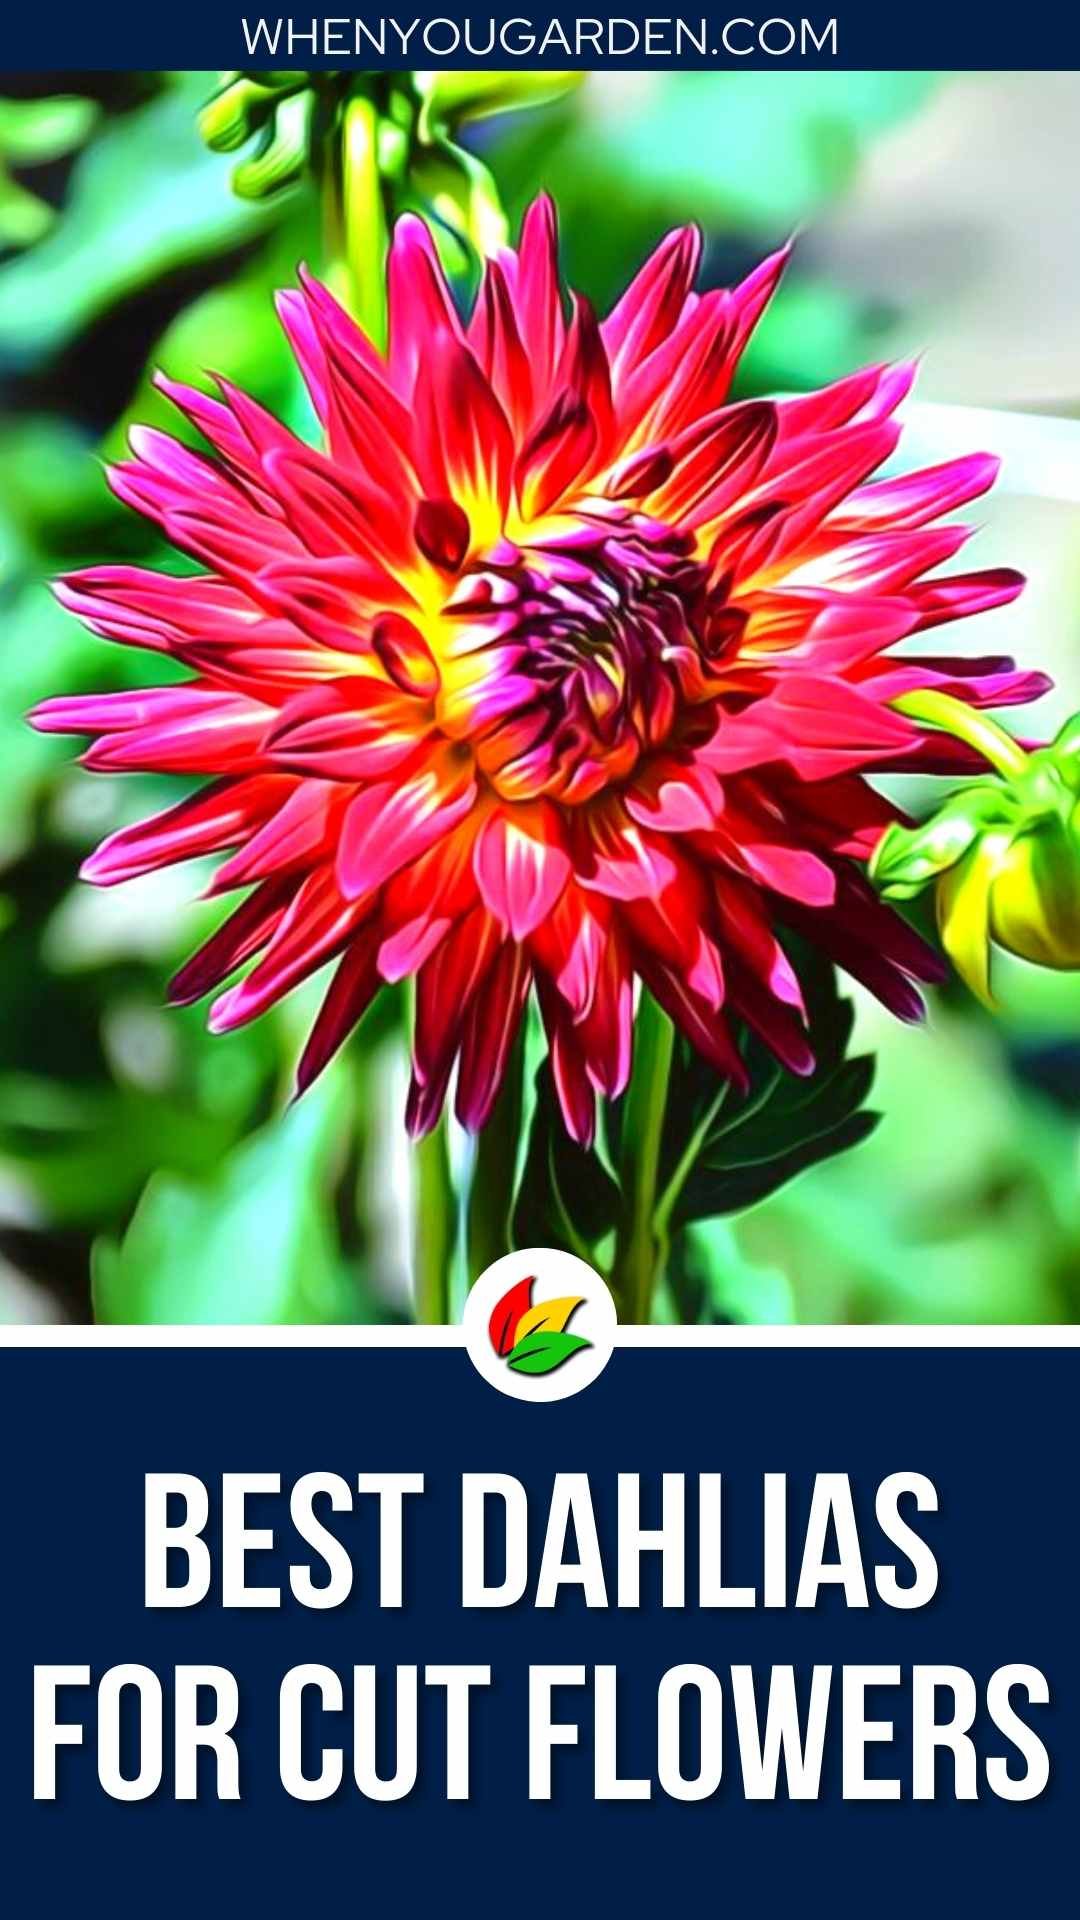 Best Dahlias for Cut Flowers